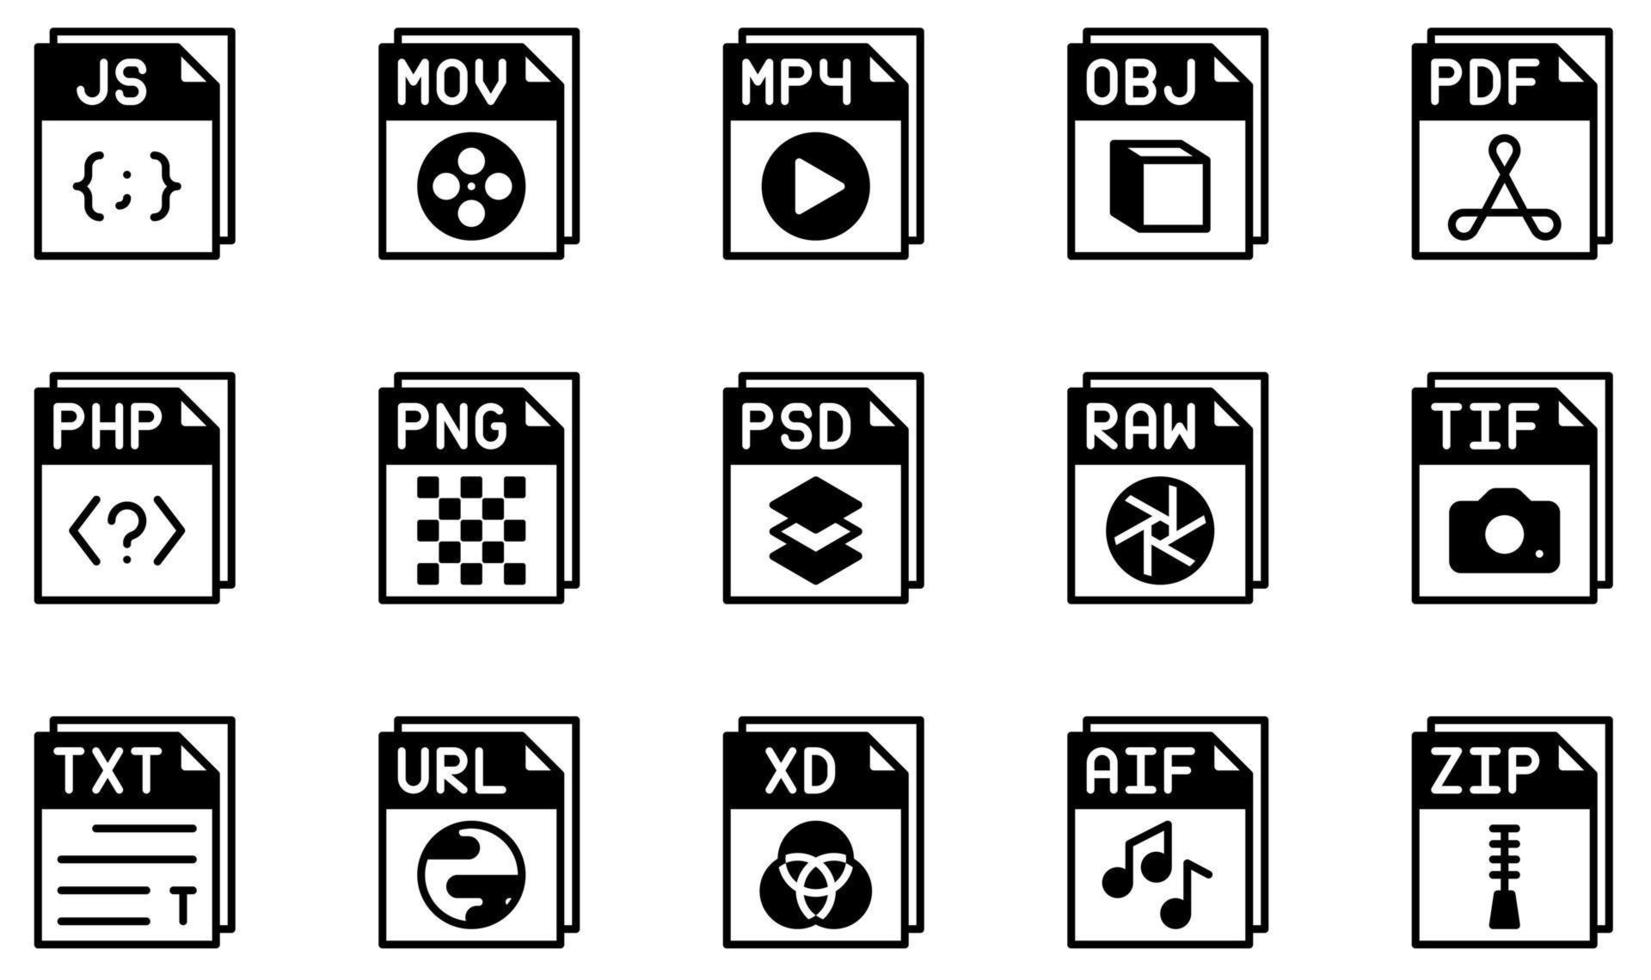 uppsättning vektor ikoner relaterade till filer. innehåller sådana ikoner som js-fil, mpphp-fil, pdf-fil, php-fil, png-fil, psd-fil och mer.